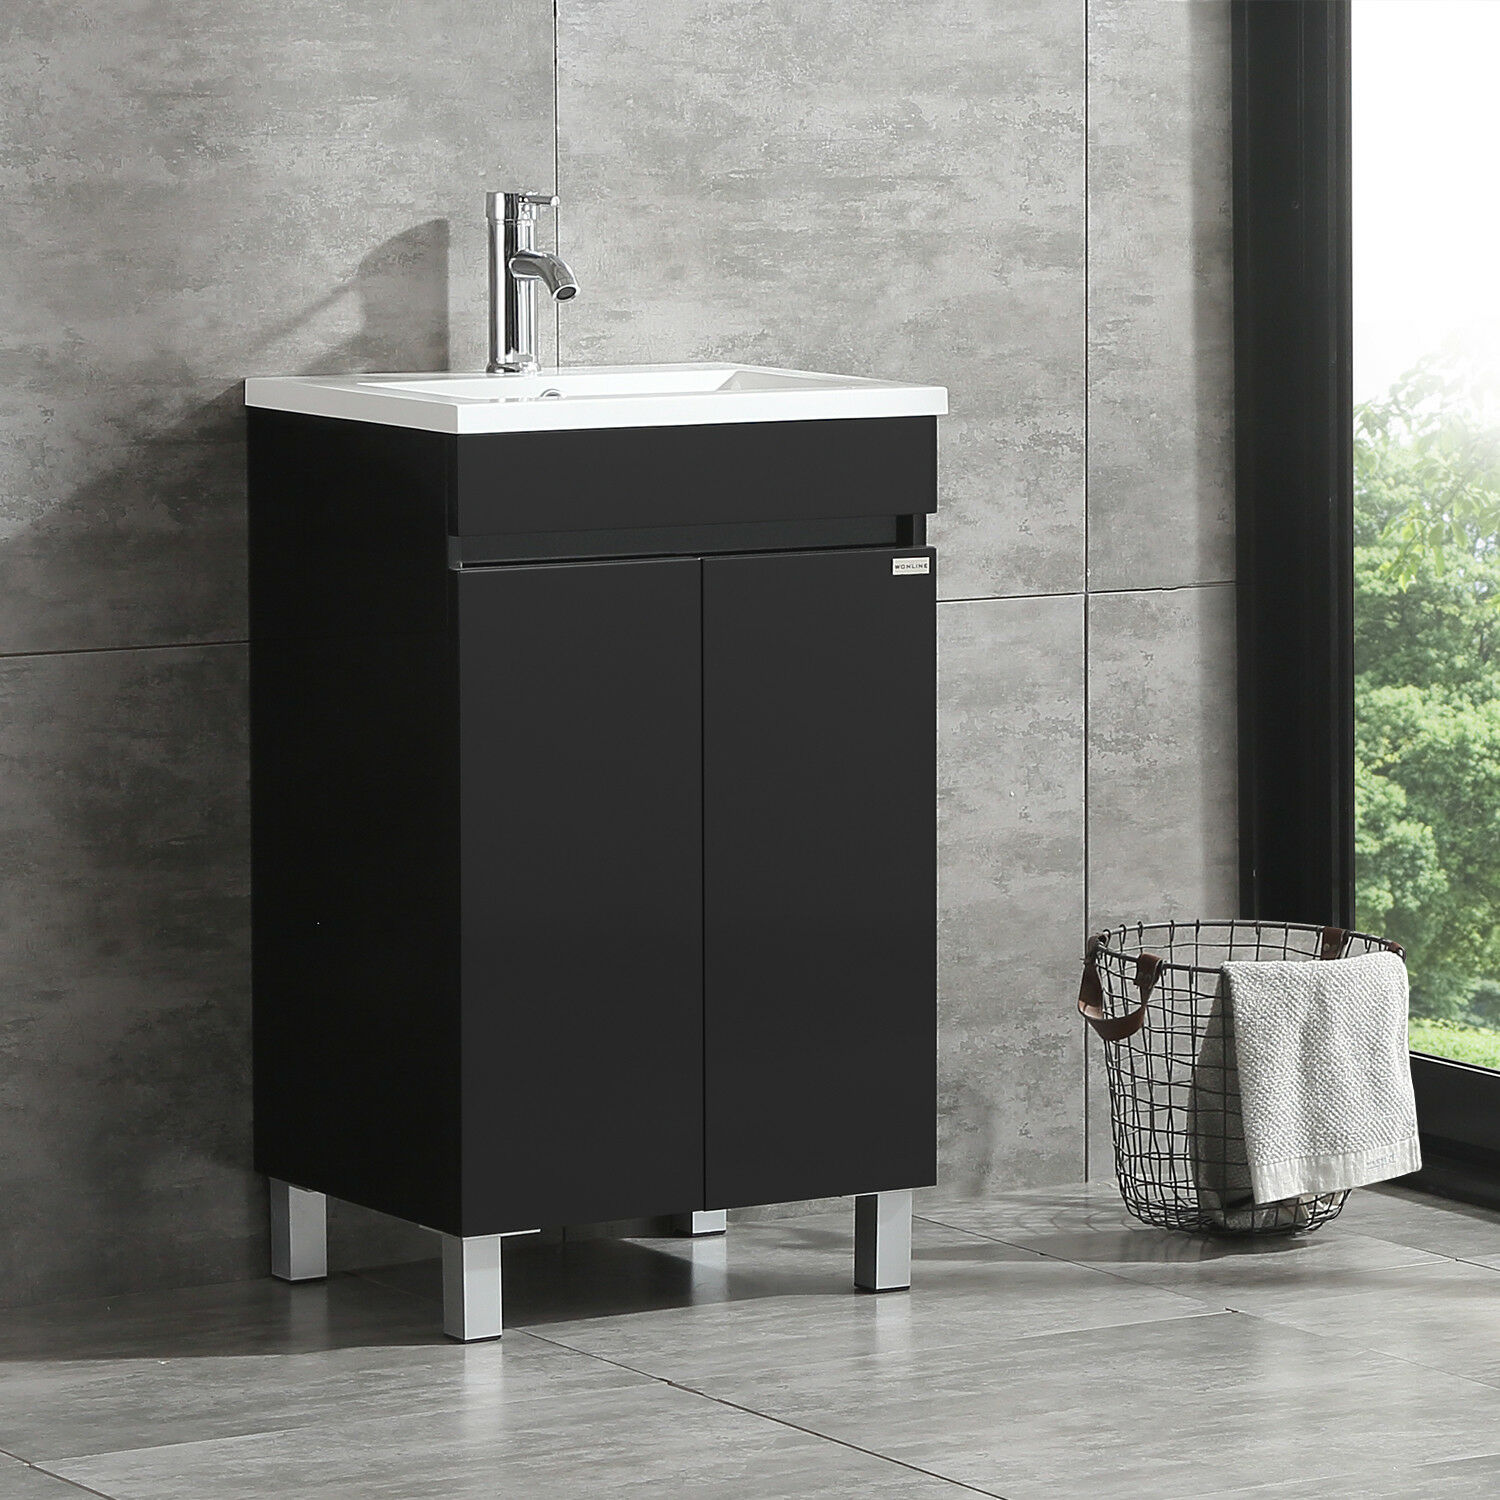 Buy Walcut Black Bathroom Vanity Cabinet Wood Storage With Undermount Vessel Sink Faucet Us Online In Indonesia 360226752